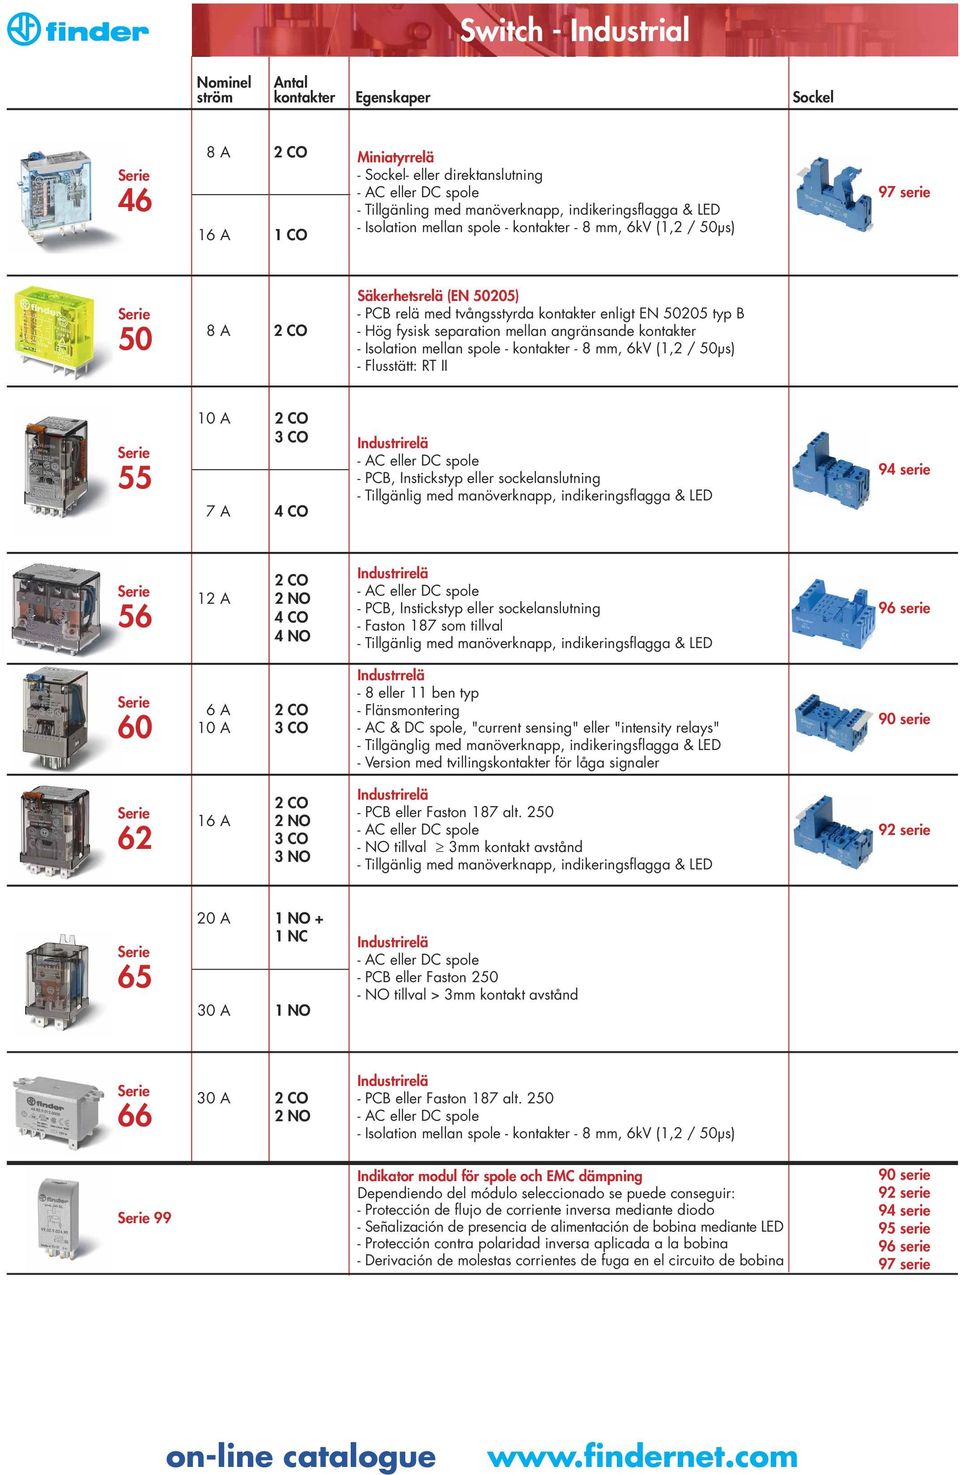 Isolation mellan spole - kontakter - 8 mm, 6kV (1,2 / 50μs) 55 3 CO 7 4 CO - C eller DC spole - PCB, Instickstyp eller sockelanslutning - Tillgänlig med manöverknapp, indikeringsflagga & LED 94 serie